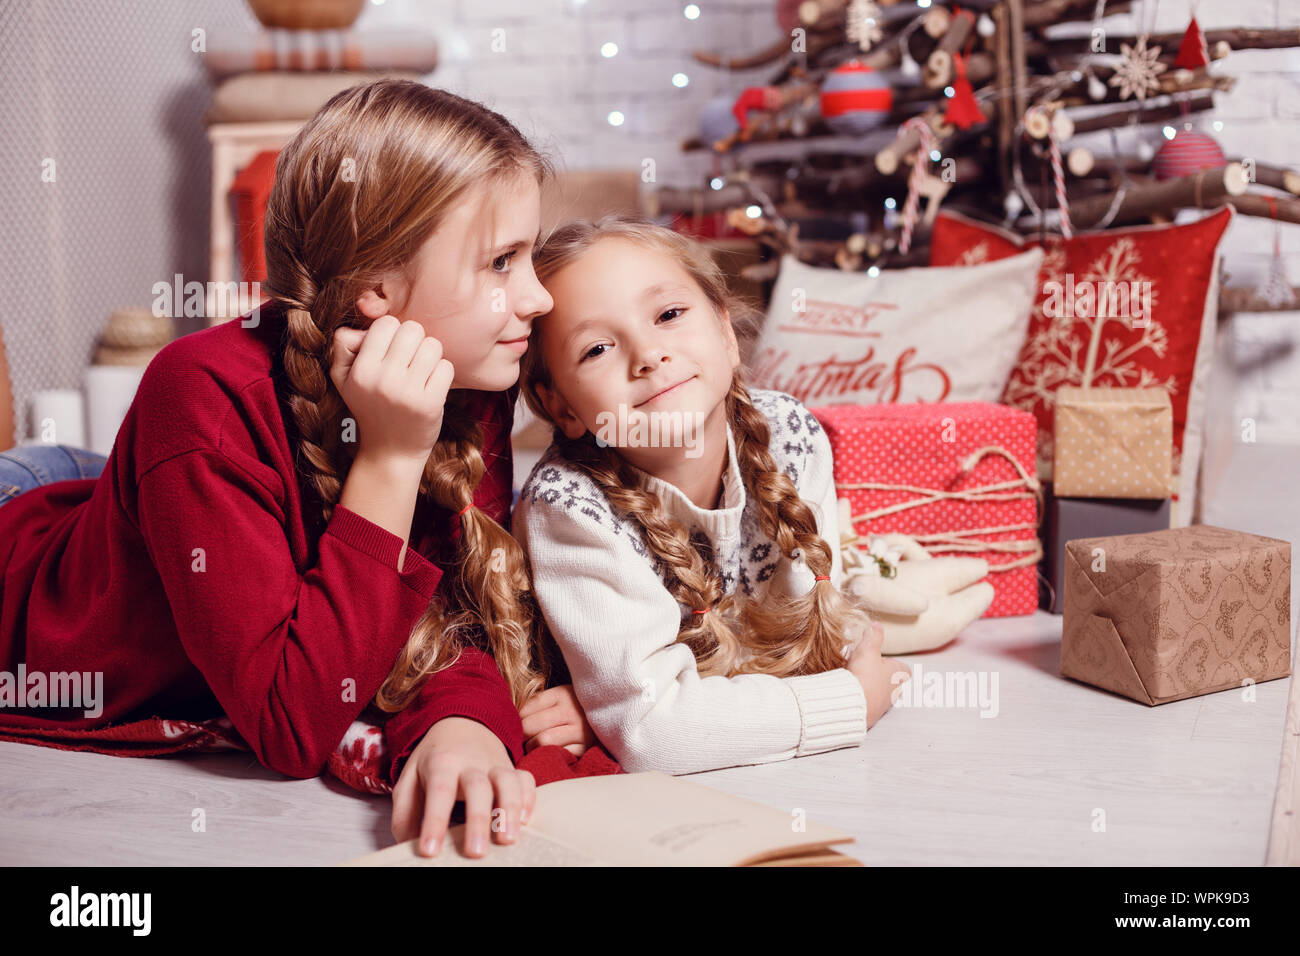 Mädchen Schwester Freunde umarmen sitzen am Weihnachtsbaum, das Konzept der Kindheit, Weihnachten und Neujahr, auf hellem Hintergrund Stockfoto